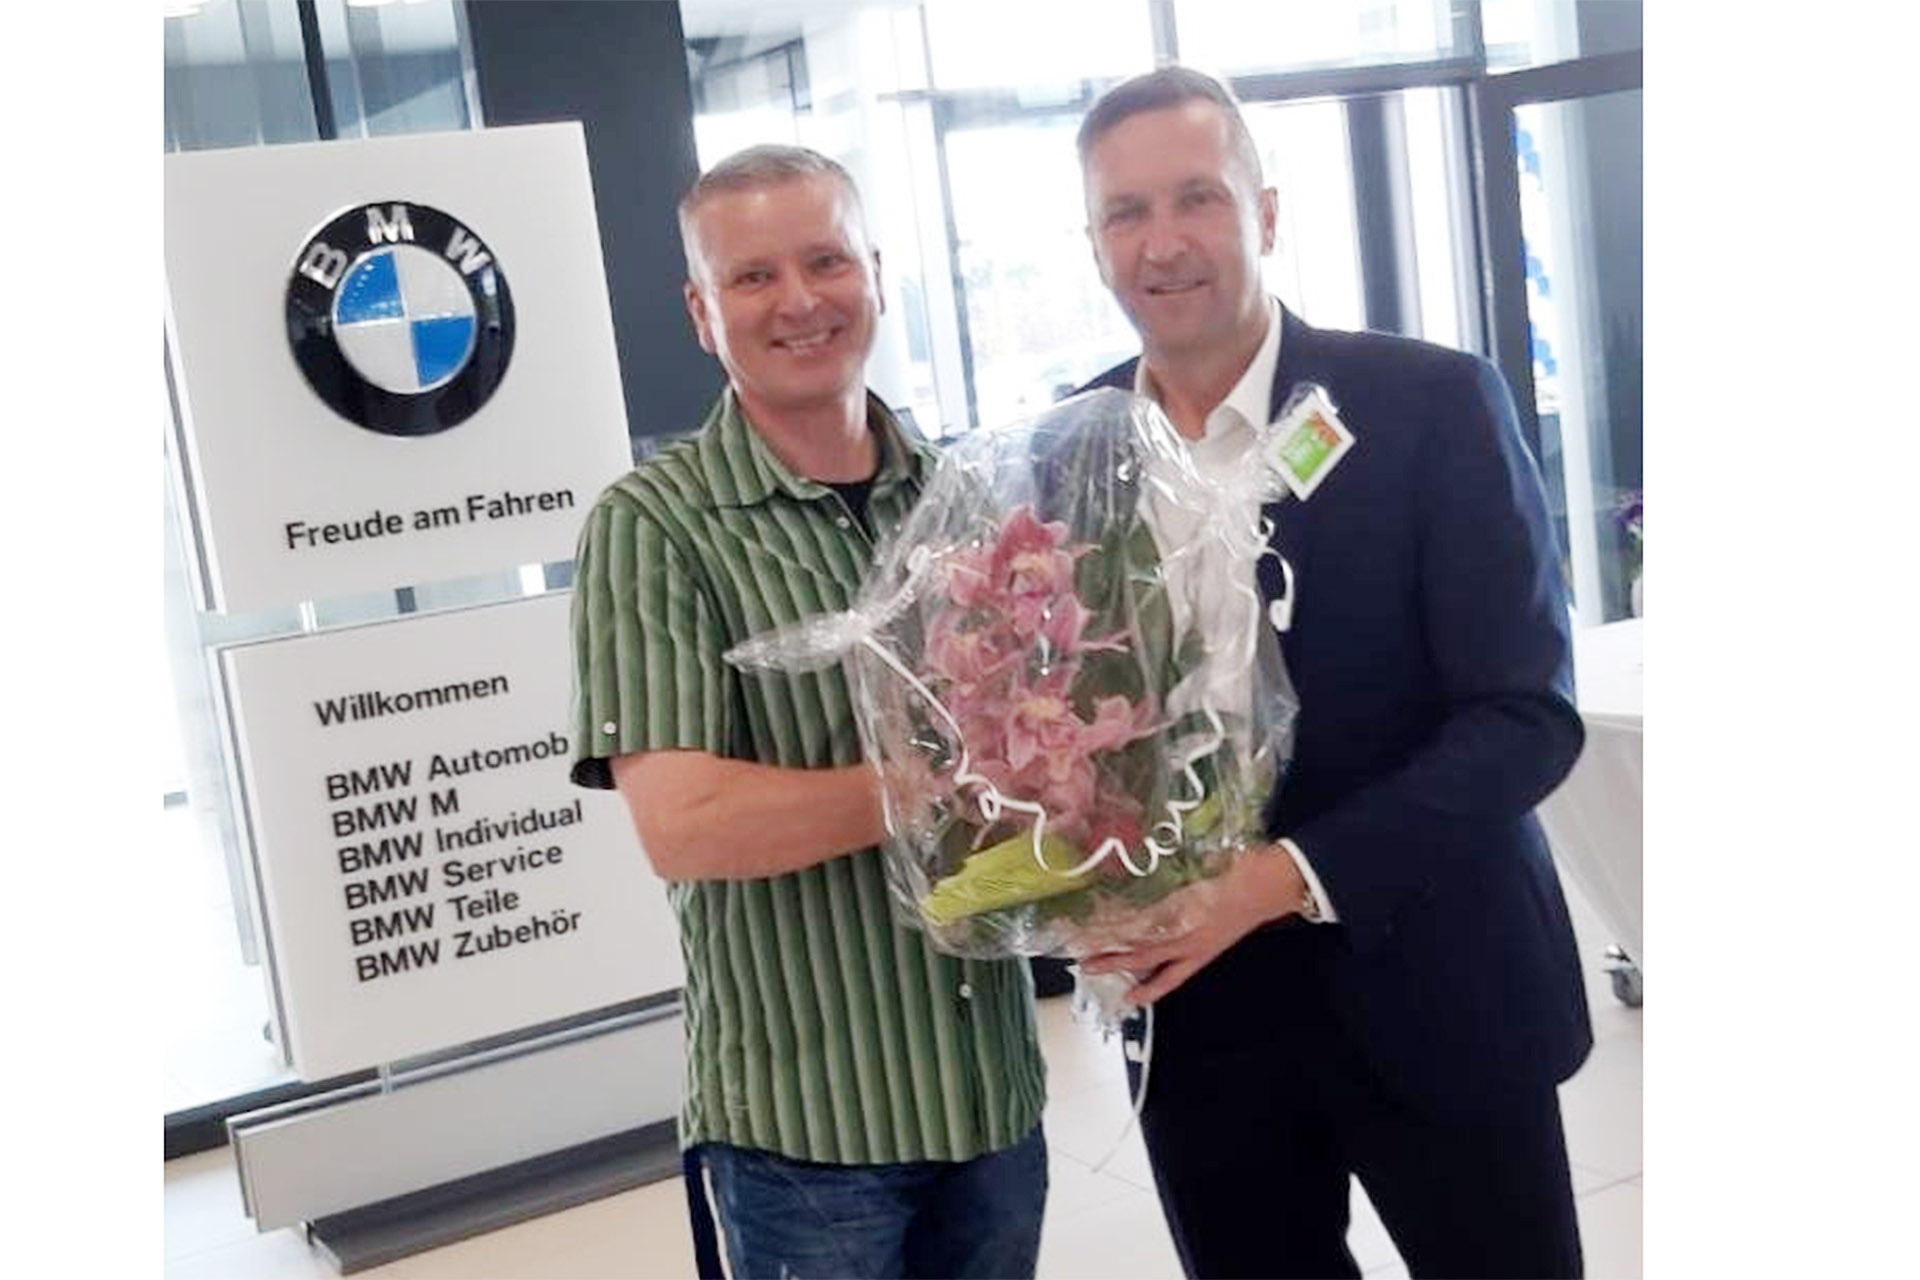 Glückwünsche zur großen Eröffnung möchten wir heute unserem Sponsor, dem BMW Autohaus Kühnert GmbH & KG im Namen des Vorstands übermitteln.